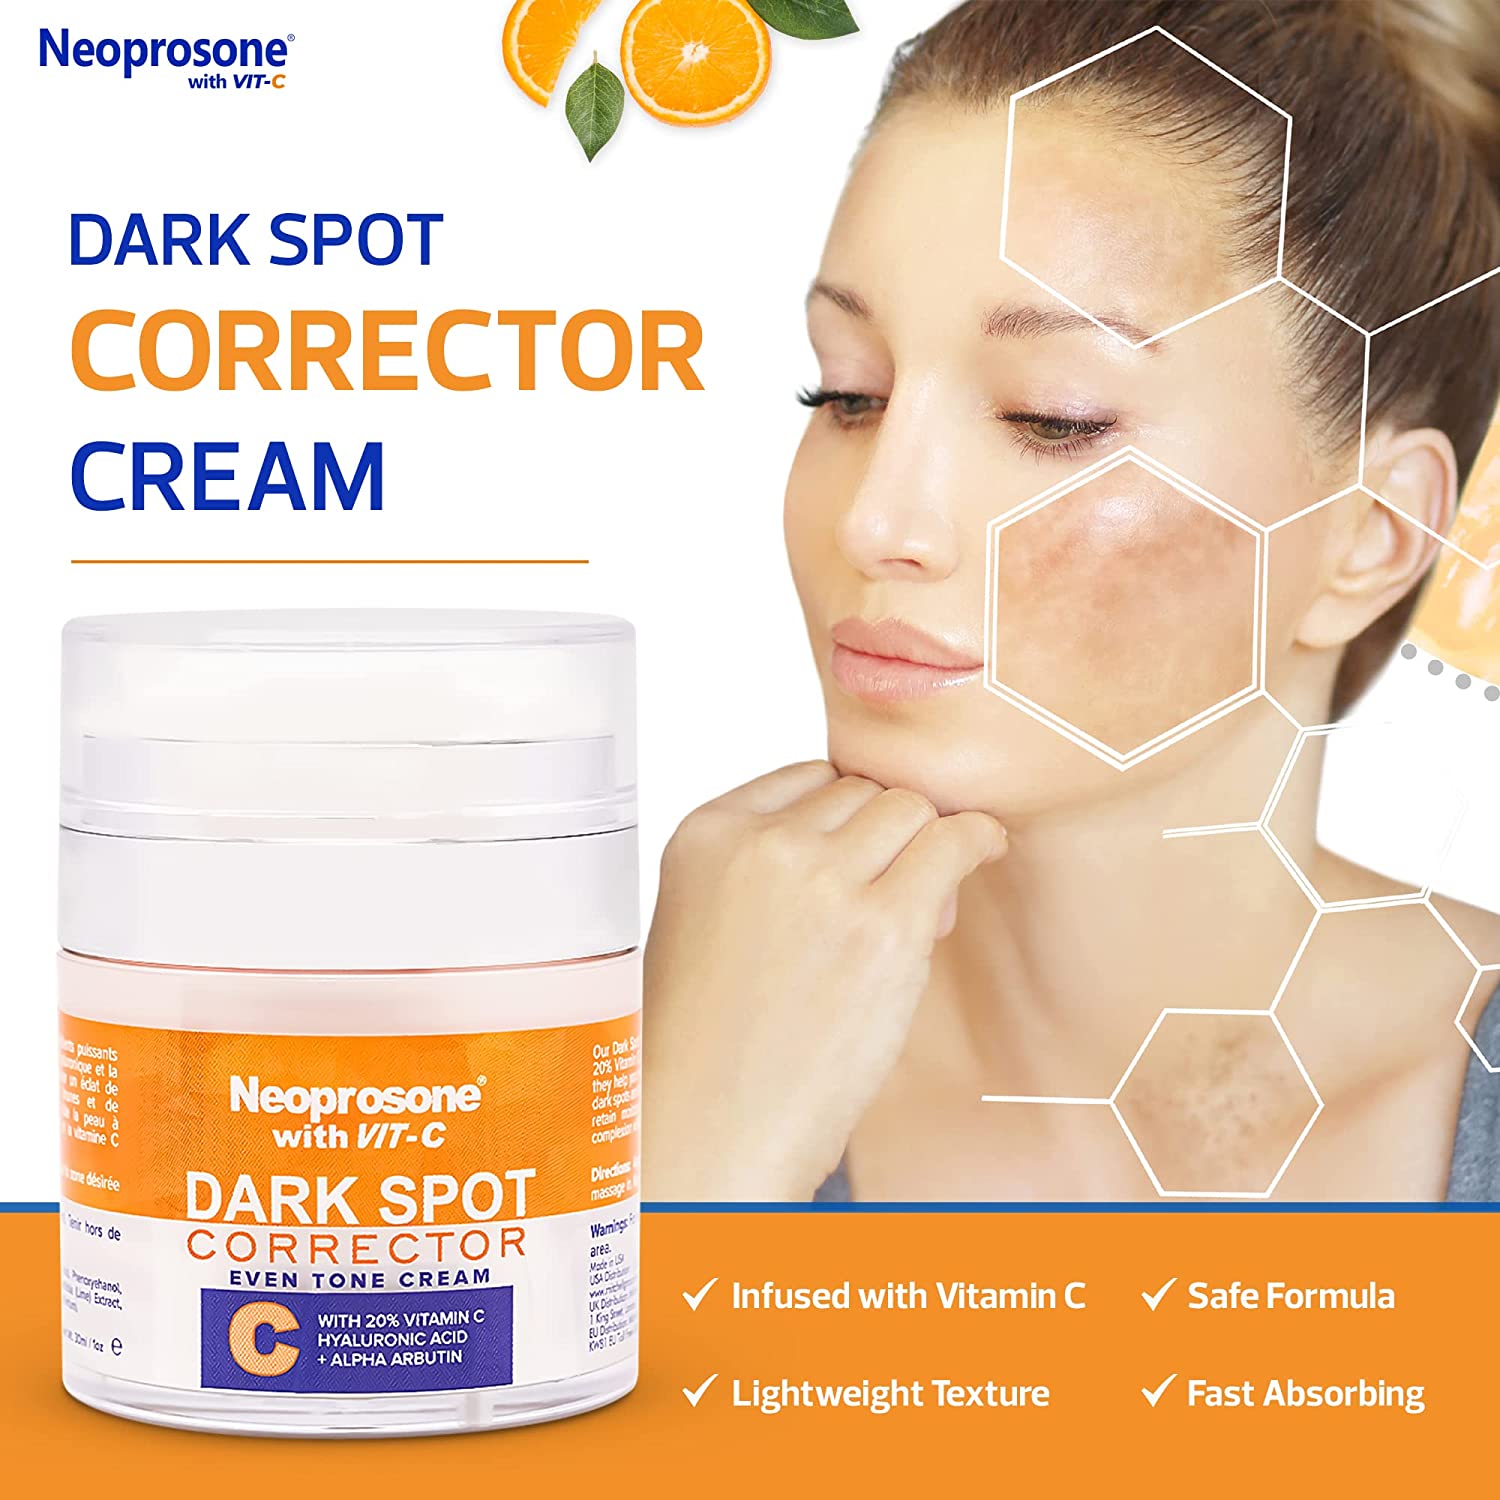 Neoprosone 20% Vitamin C Korrekturcreme für dunkle Flecken 1 fl oz / 30ml